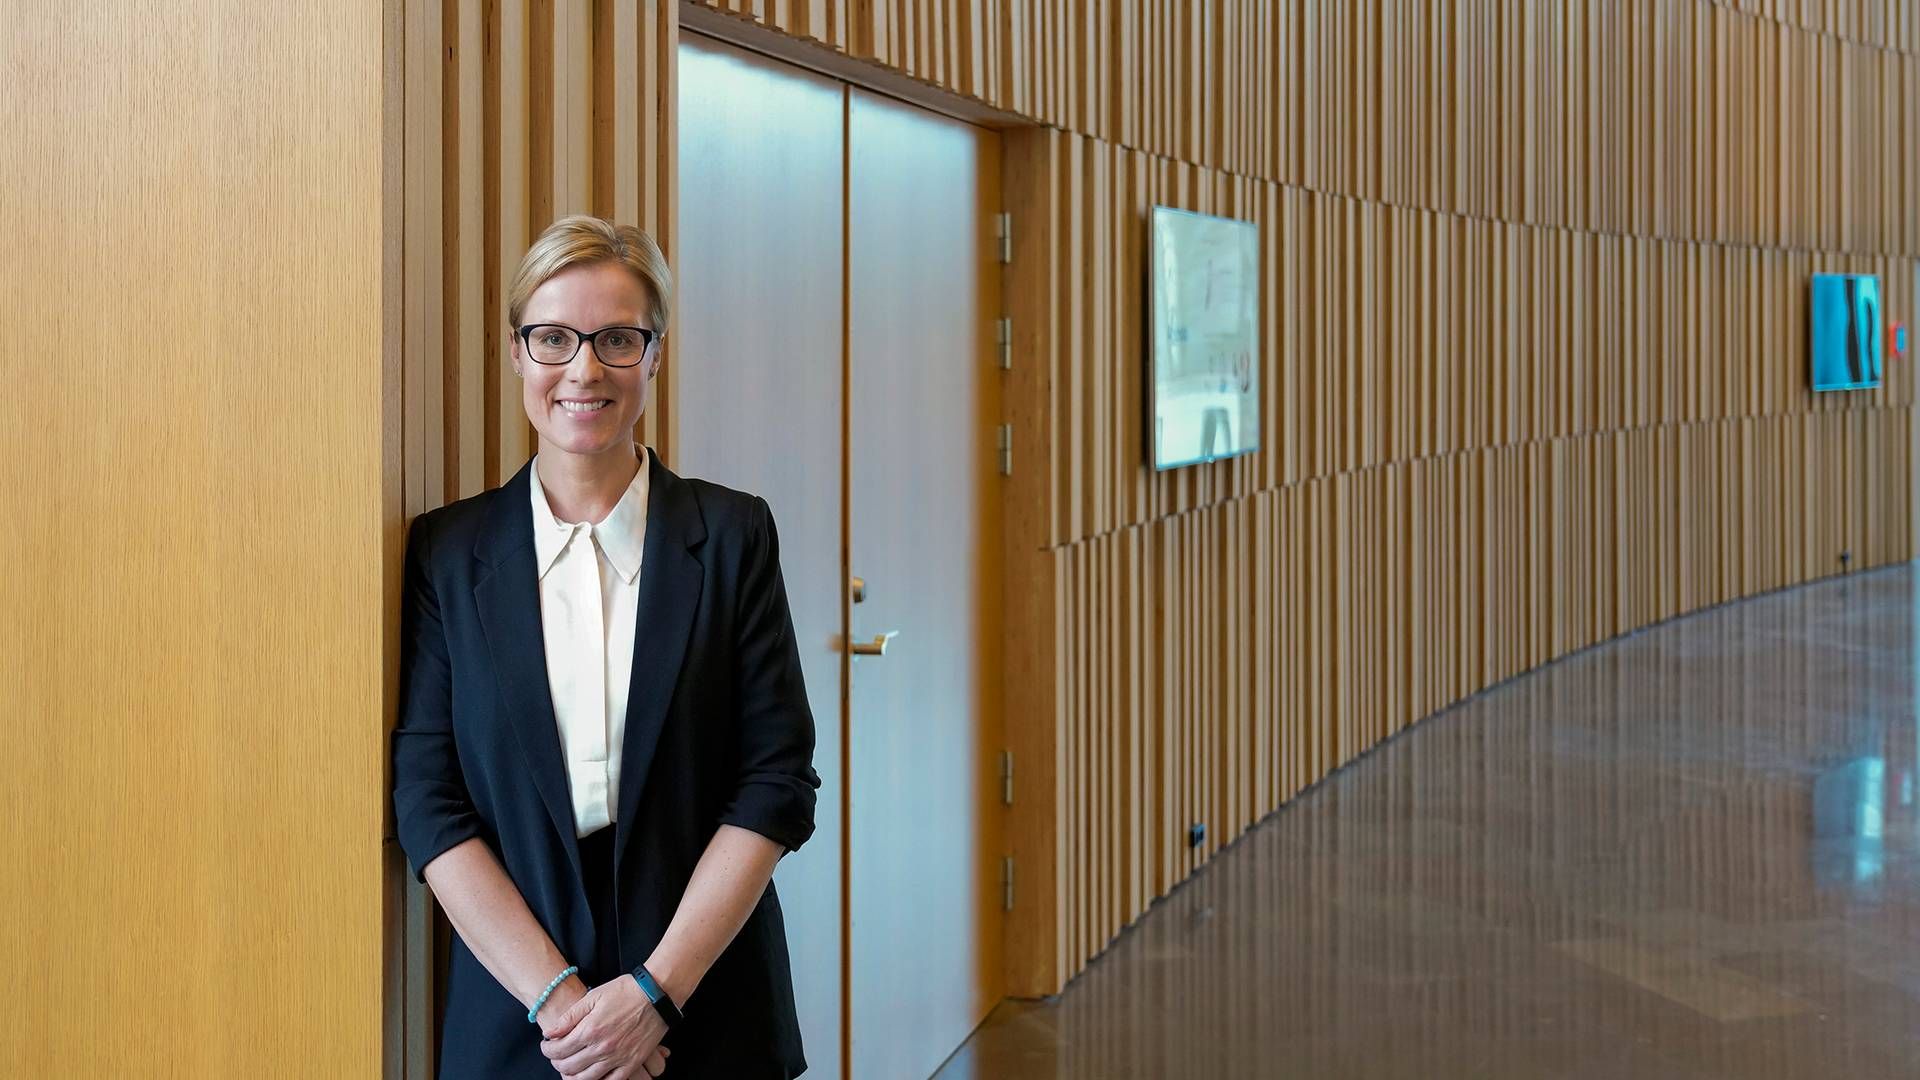 Novo Nordisks HR-direktør, Tania Sabroe, peger på, at virksomheden forandrer sig i disse år. | Foto: Novo Nordisk / Pr